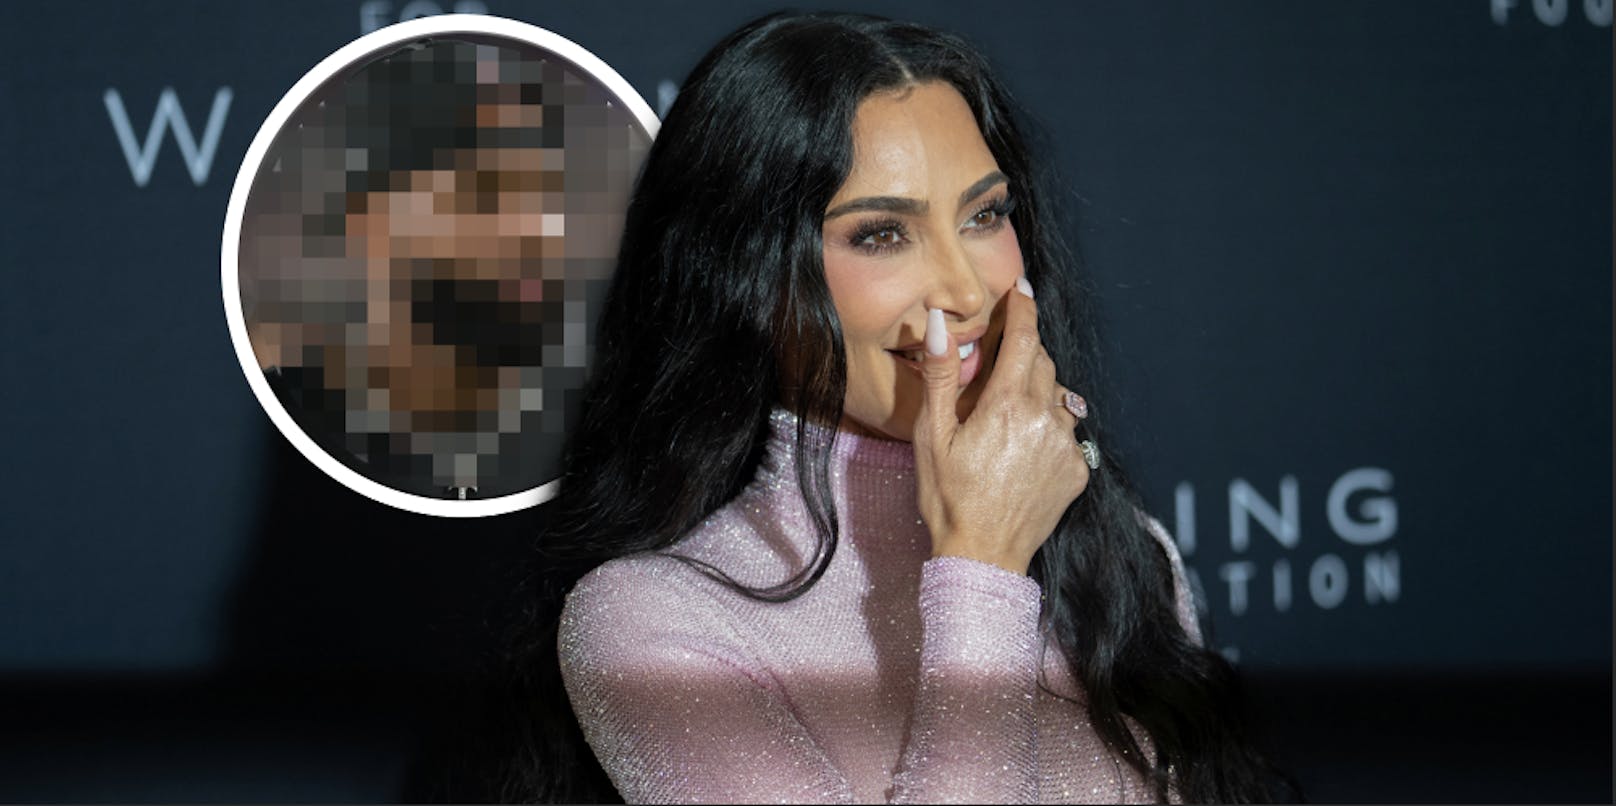 Neuer Lover? Kim Kardashian trifft NFL-Superstar